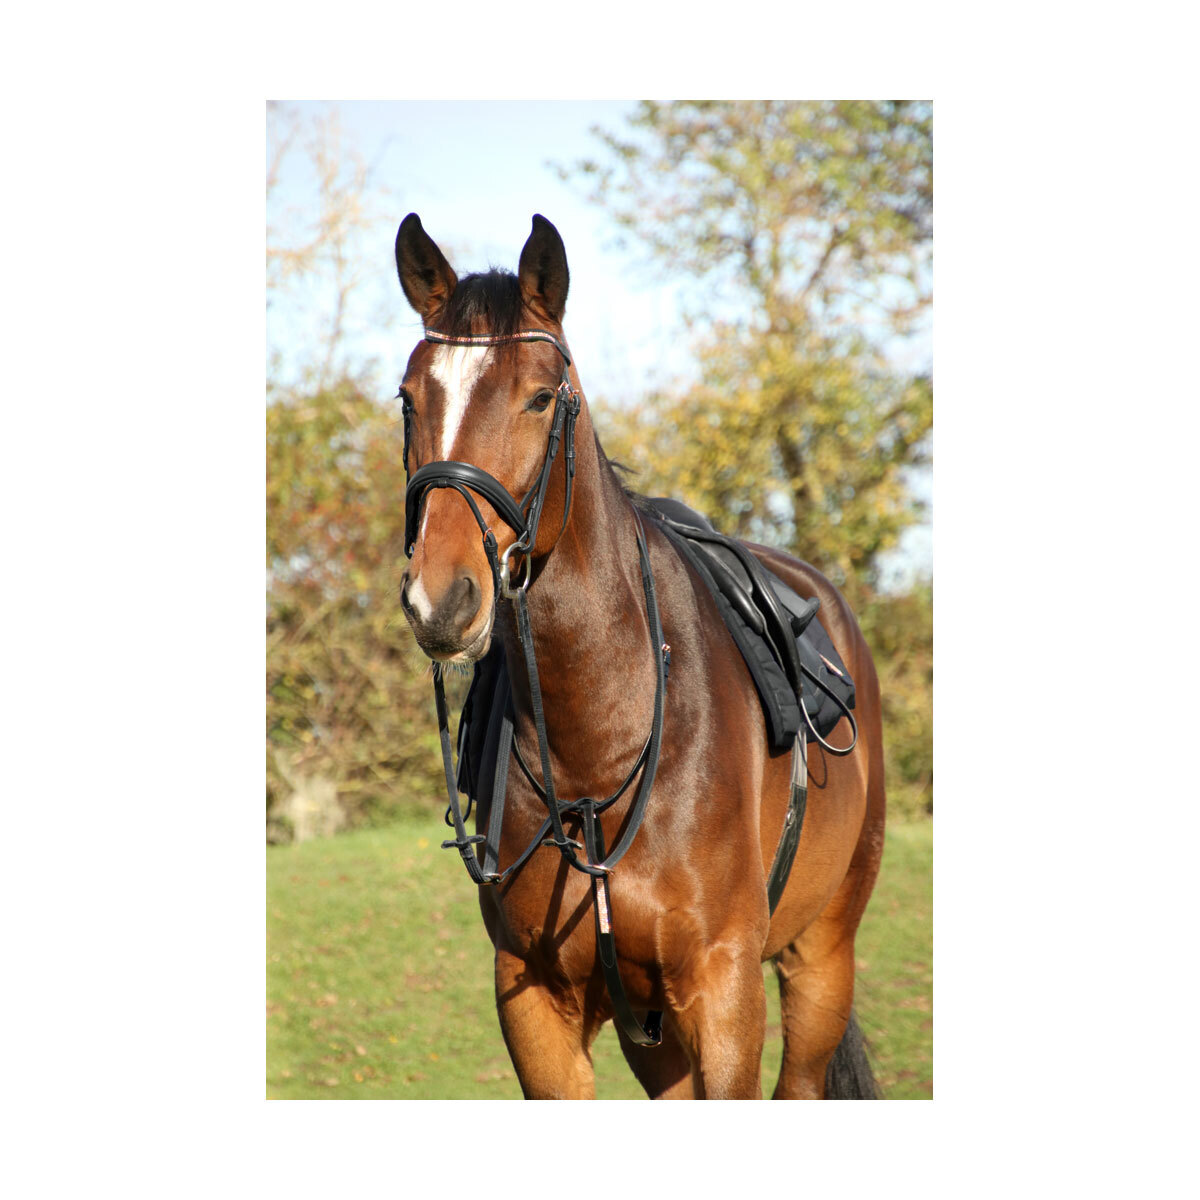 馬具 調教 乗馬用品 馬装 ホースライディング (ハイ) Hy 馬用 Rosciano レザー マルタンガール 乗馬 馬具 ホースライディング 【海外通販】